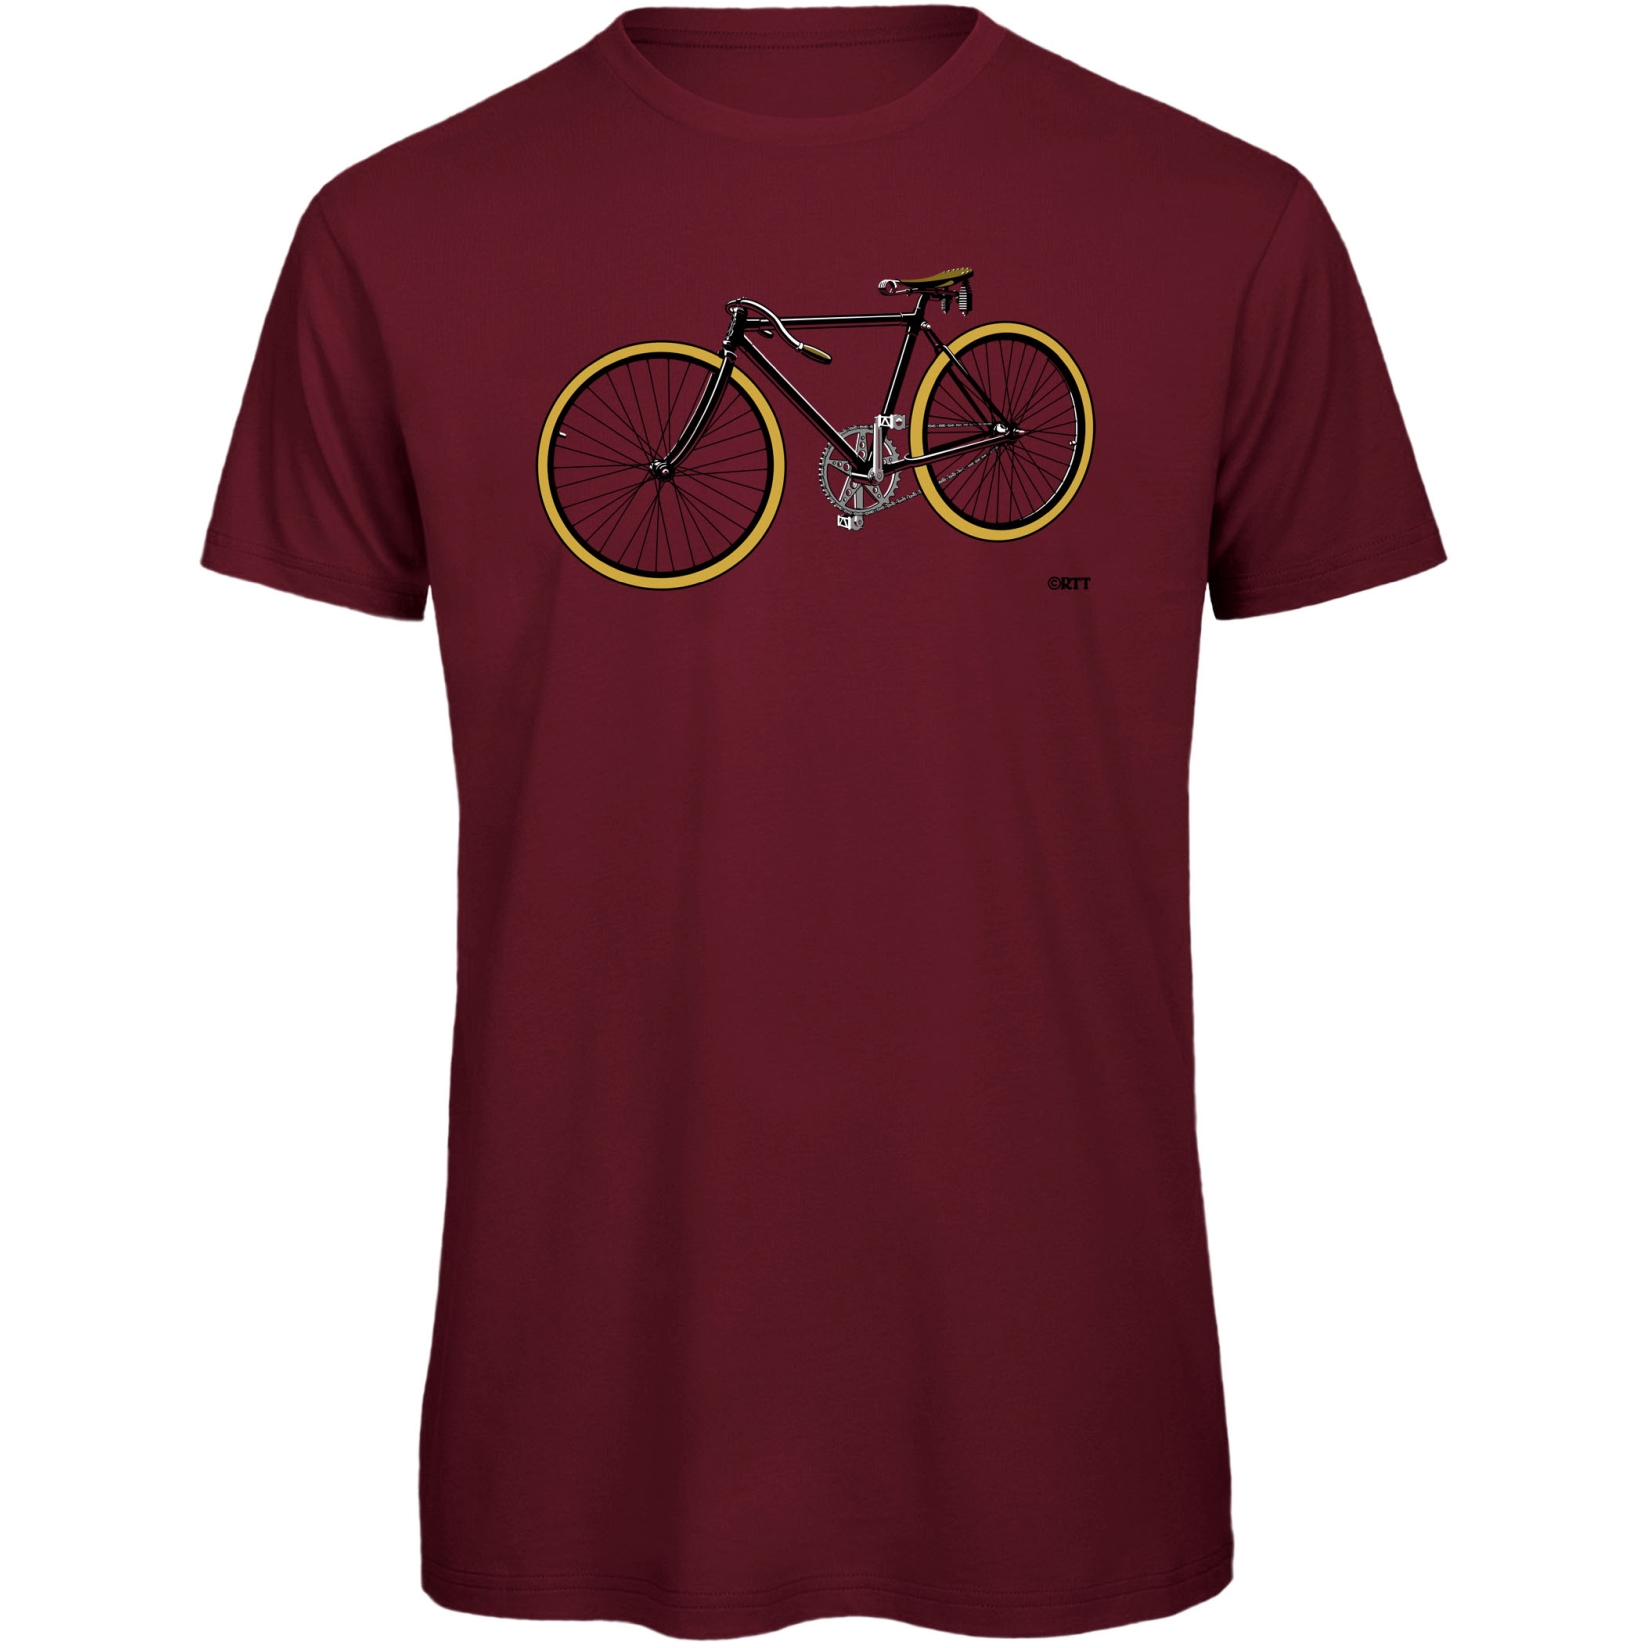 Produktbild von RTTshirts Fahrrad T-Shirt Retro Rennrad - bordeaux